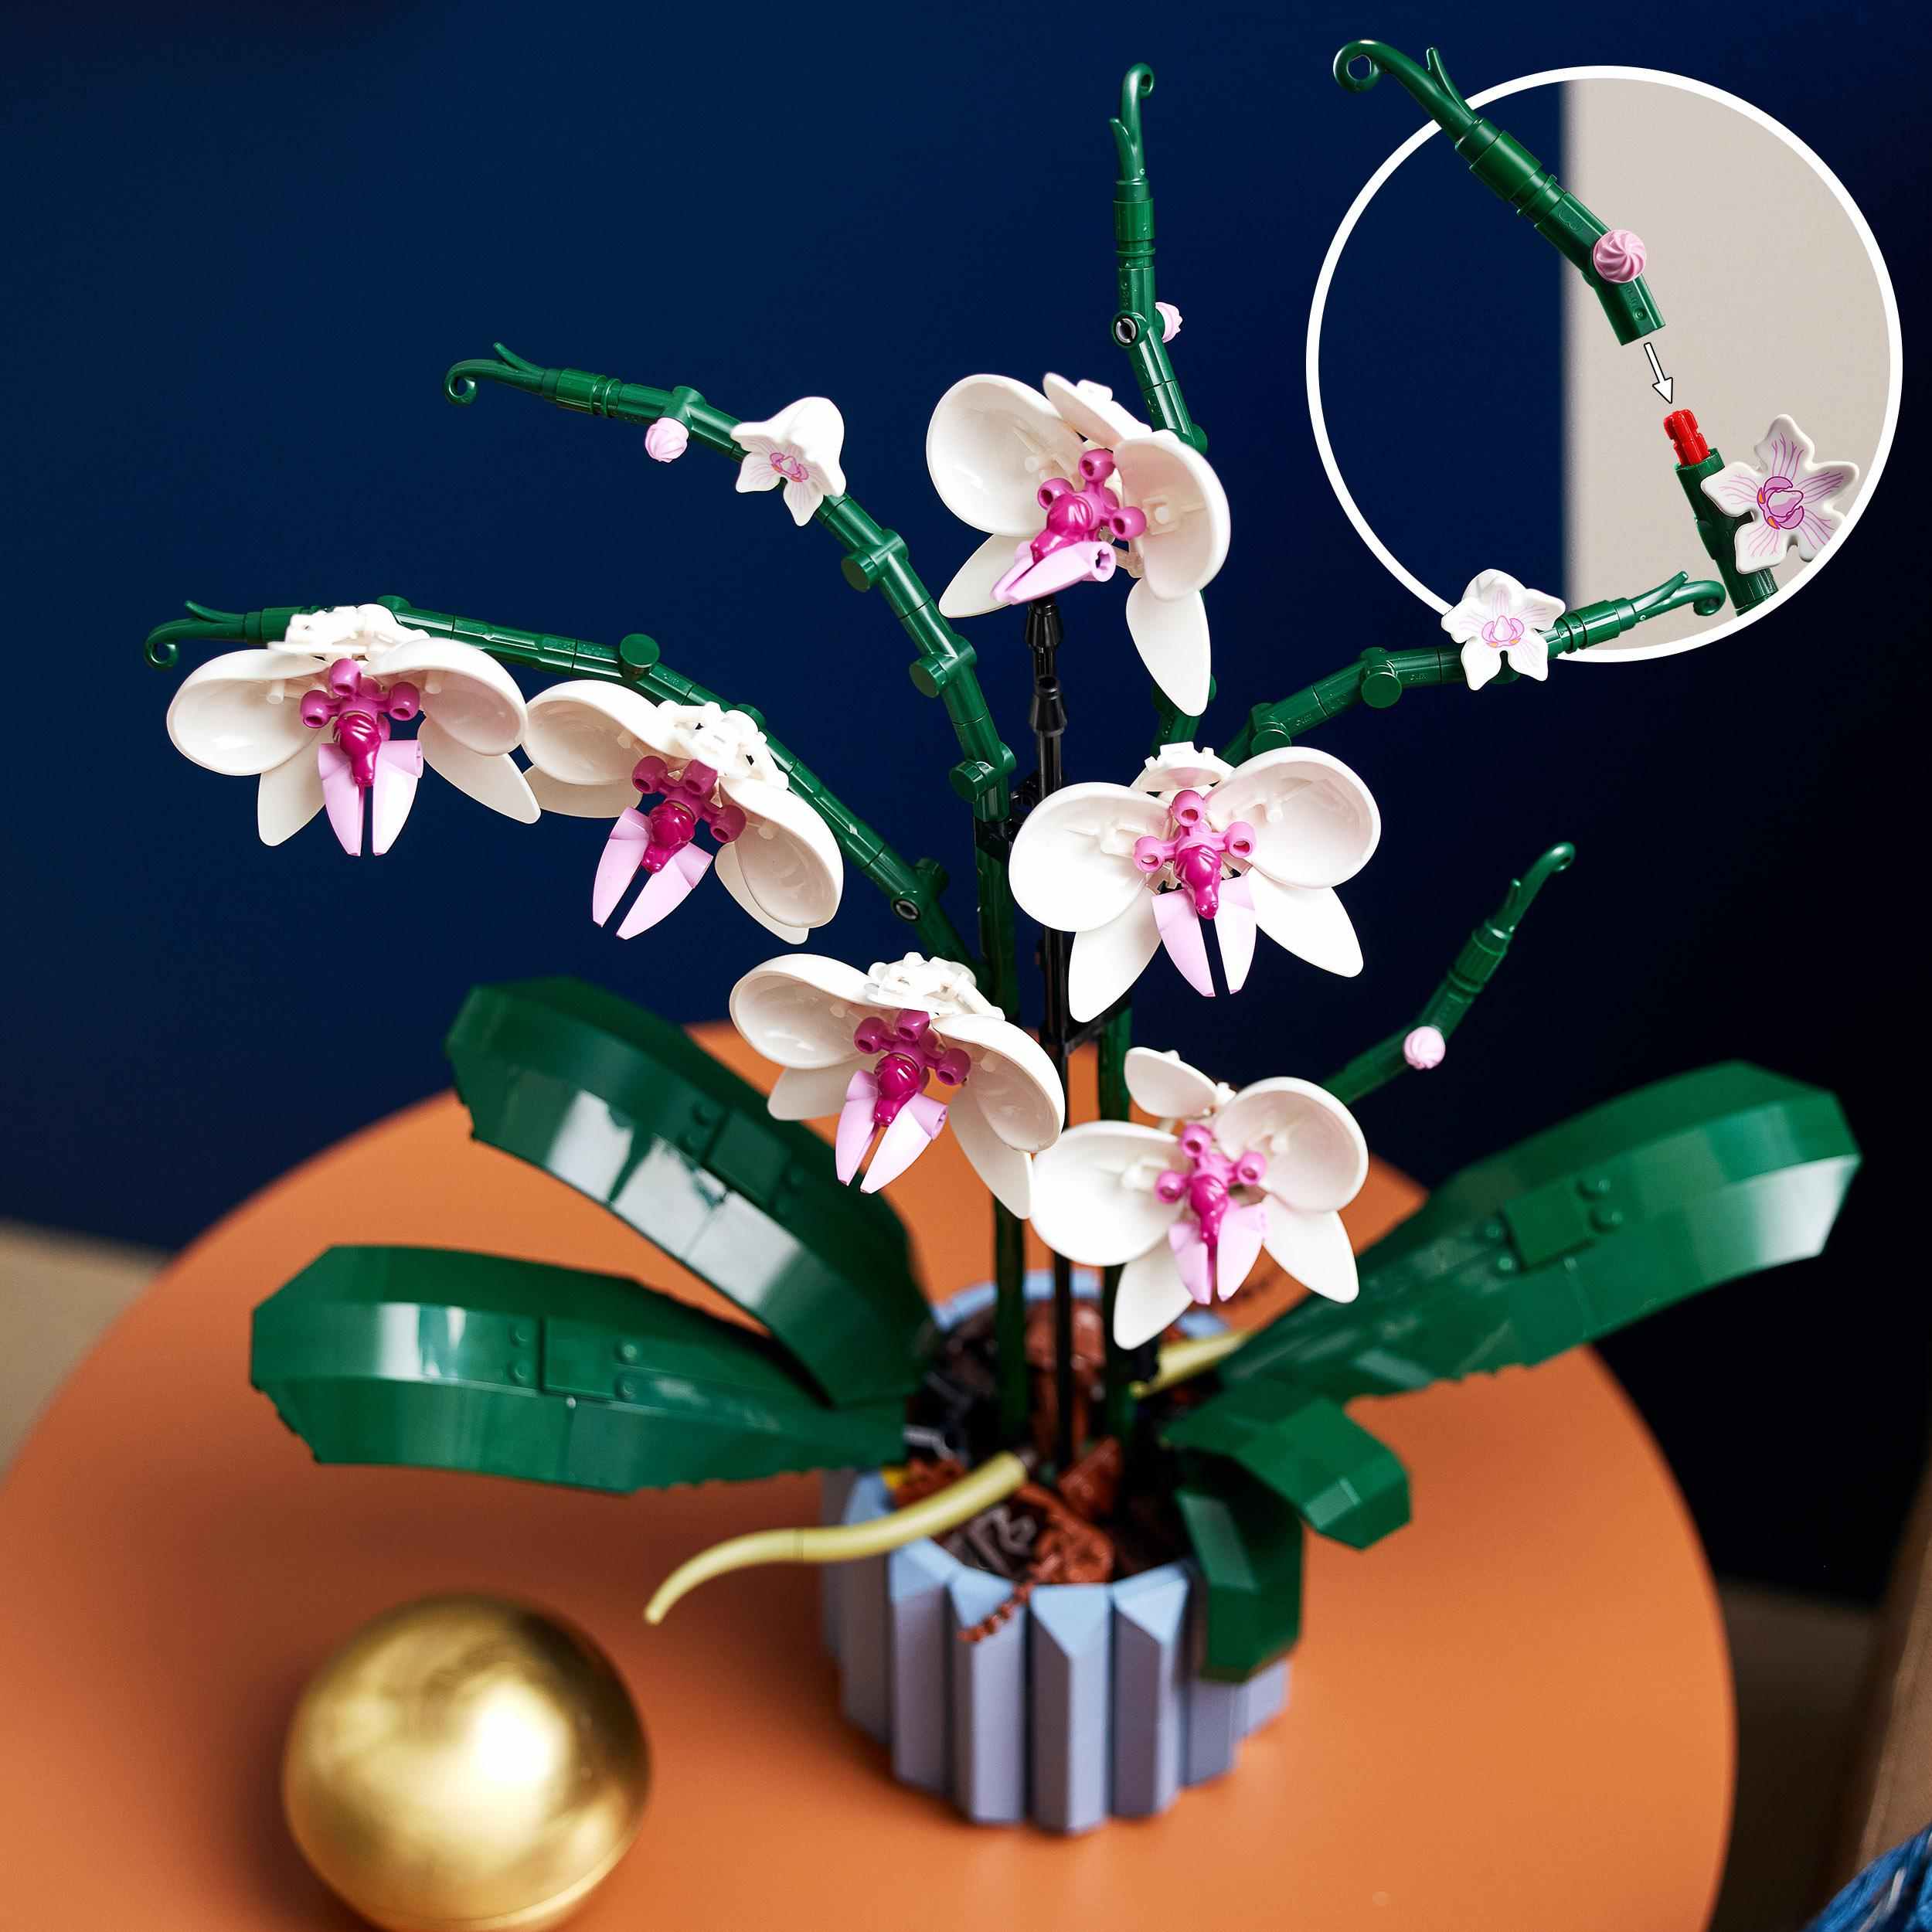 Offerte : LEGO Icons Orchidea disponibile in sconto